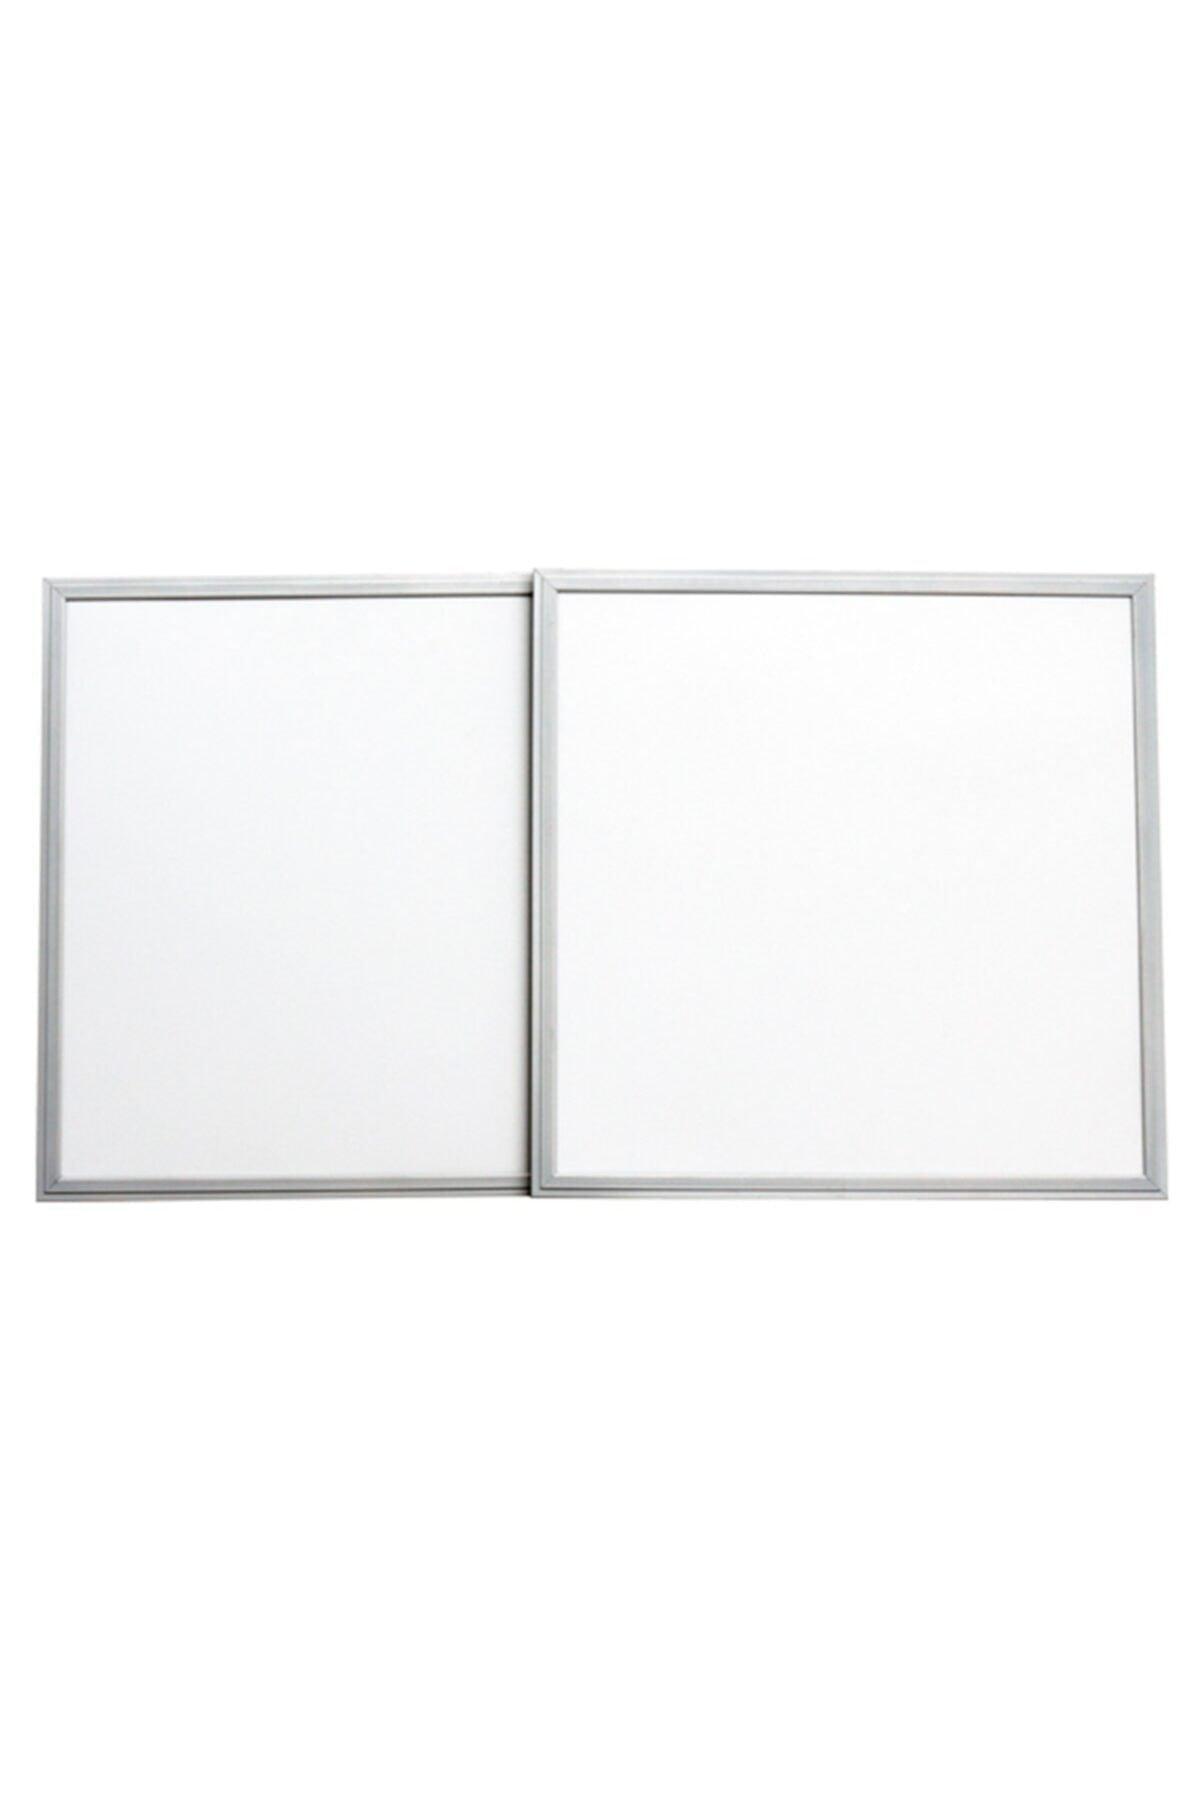 Bl-01 60x60 Led Panel White 48w - 6500k--1248